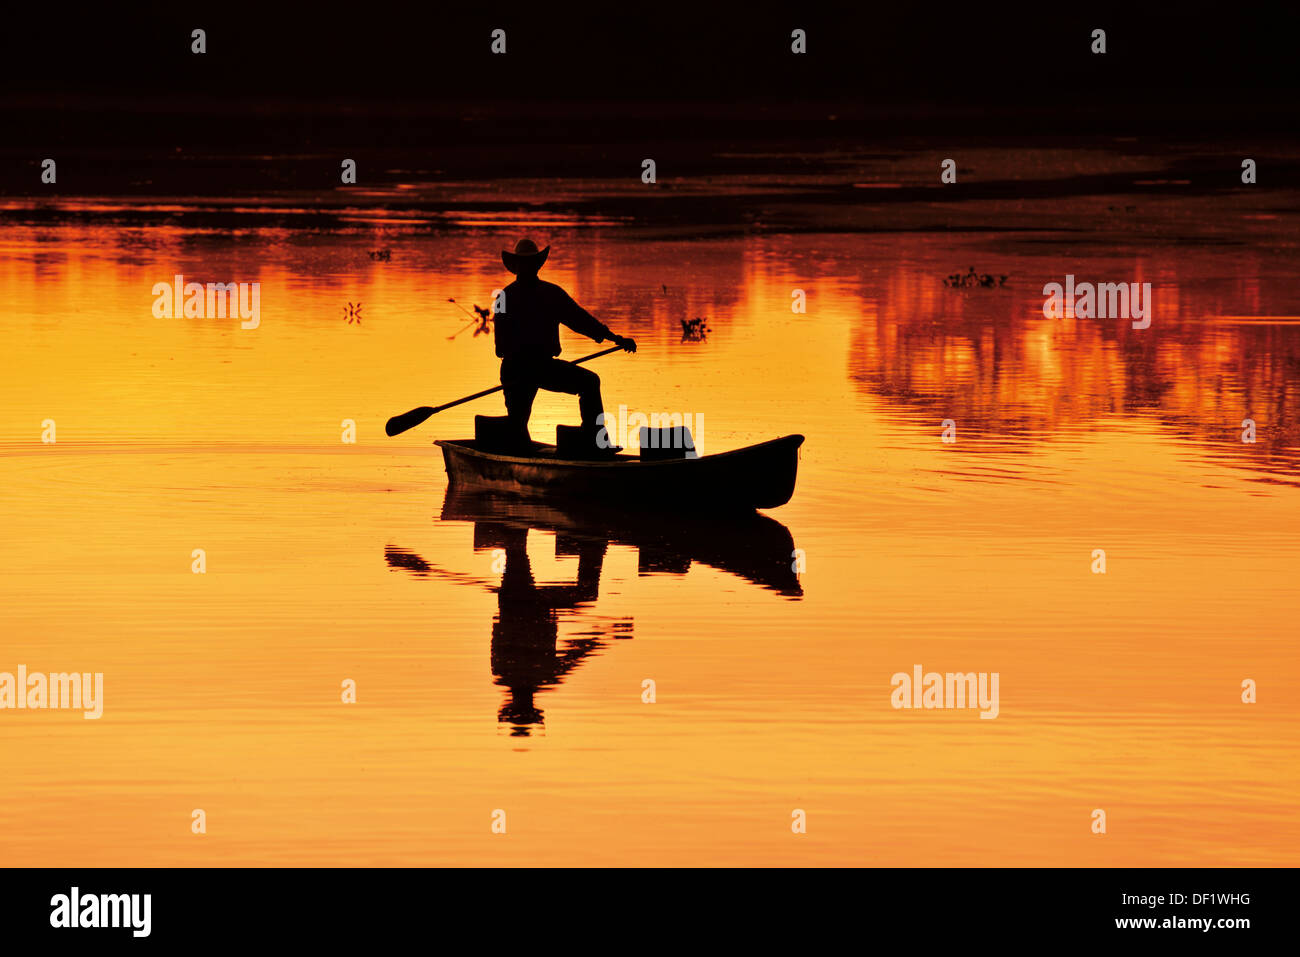 Brasilien, Pantanal: Malerischen Sonnenaufgang mit Silhouette von einem Mann in einem Boot Stockfoto